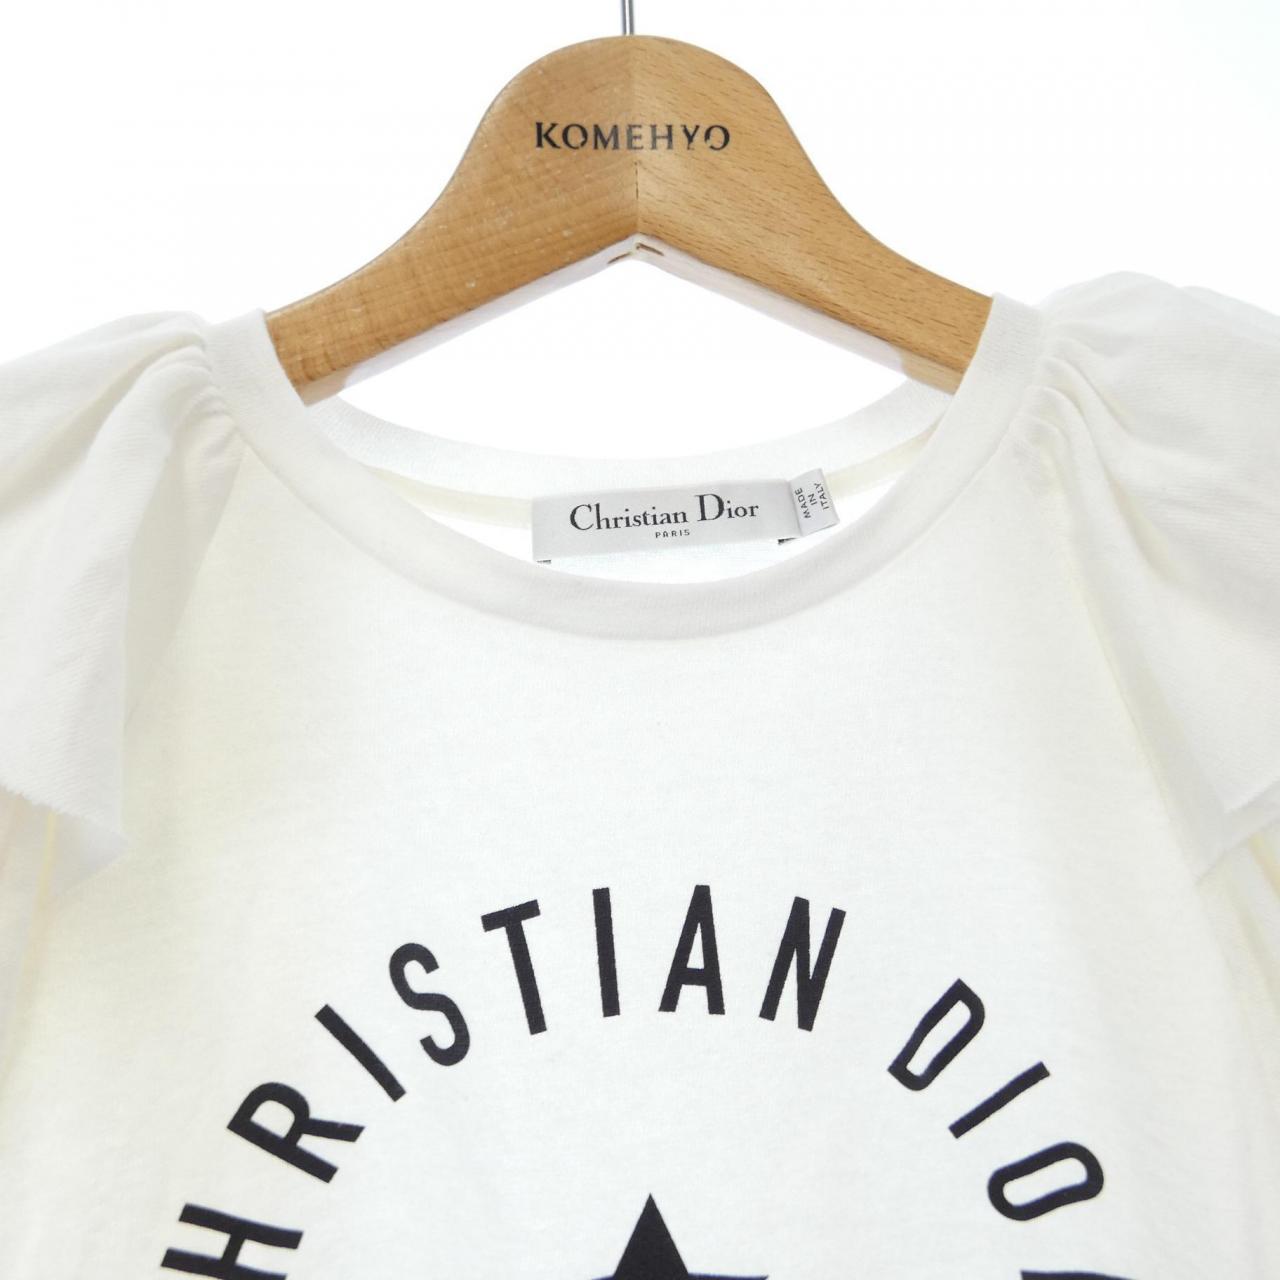 新品未使用 タグ付き Christian Dior ロゴtシャツ キャミソール 